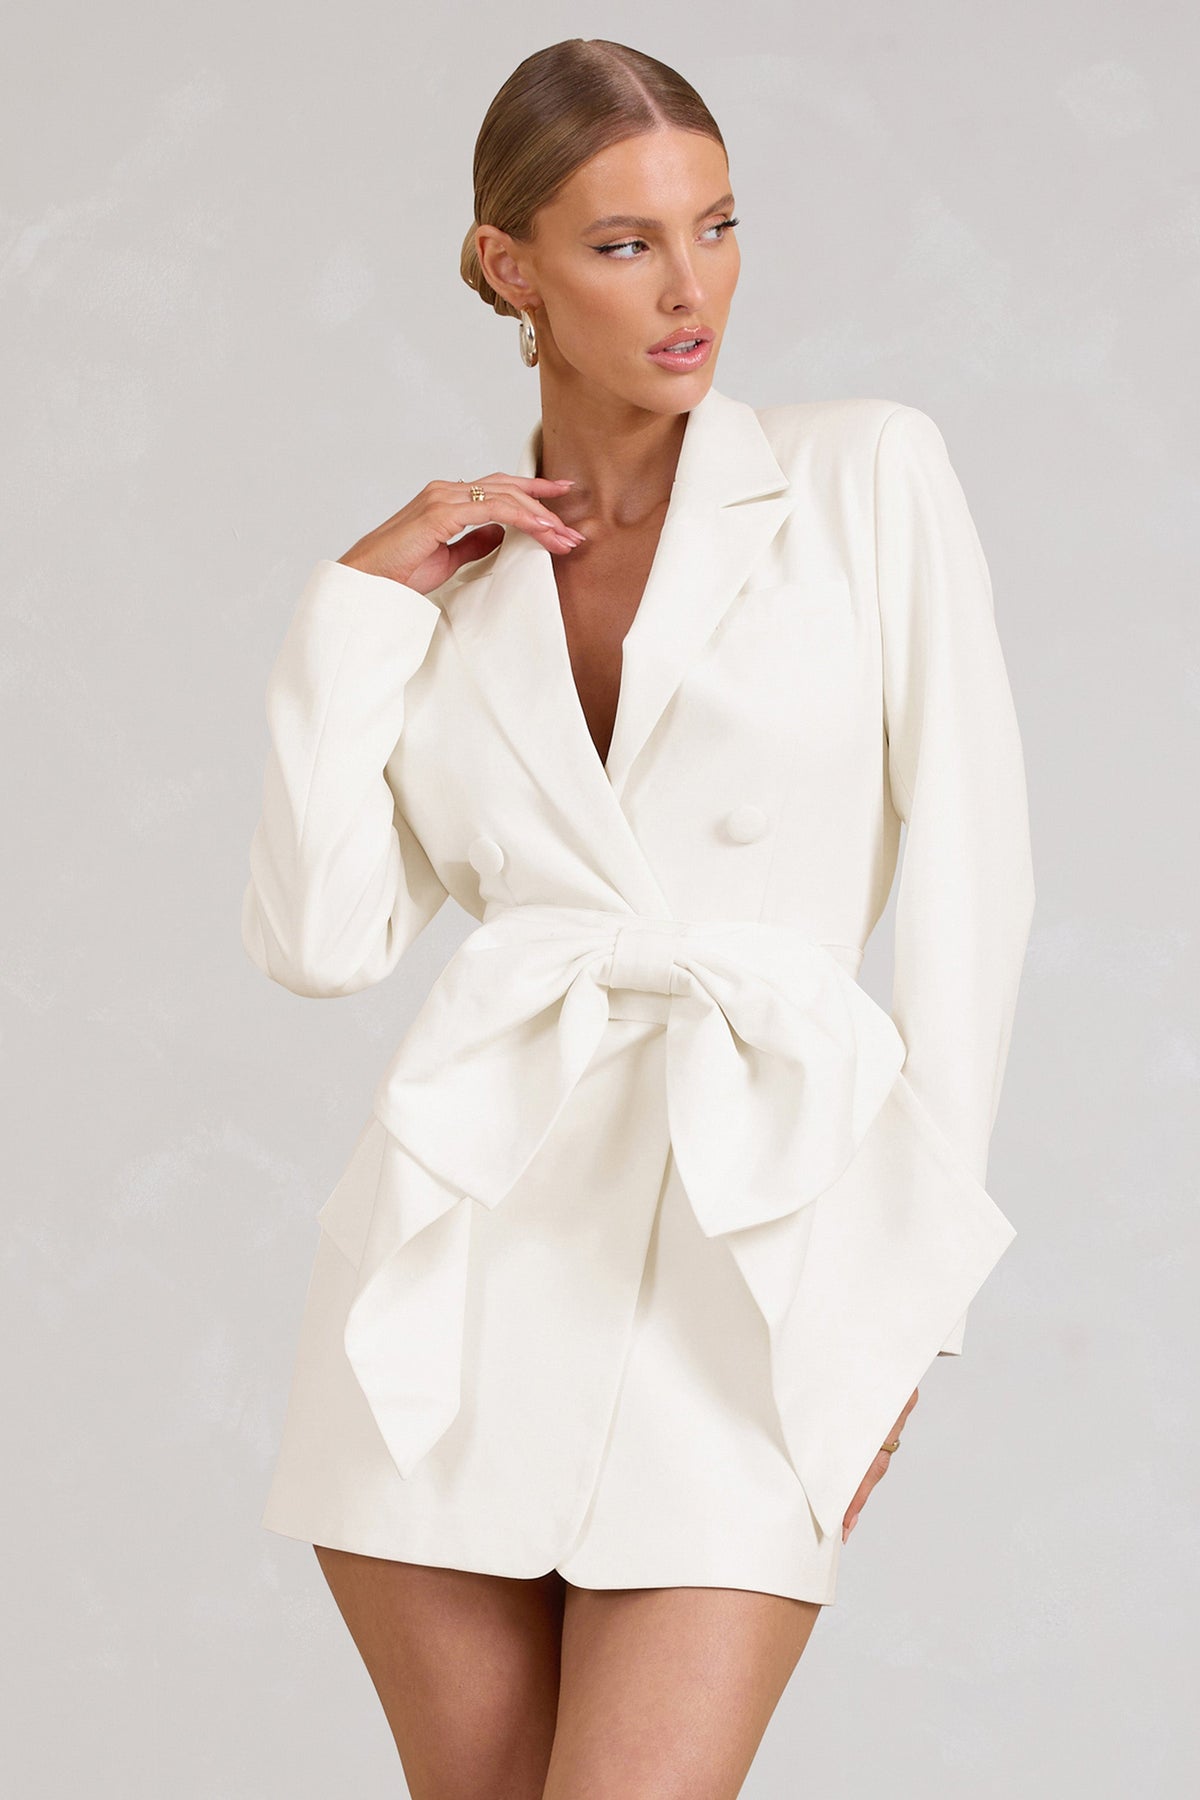 Prized | White Tailored Blazer Mini Dress with Bow US 4 / White